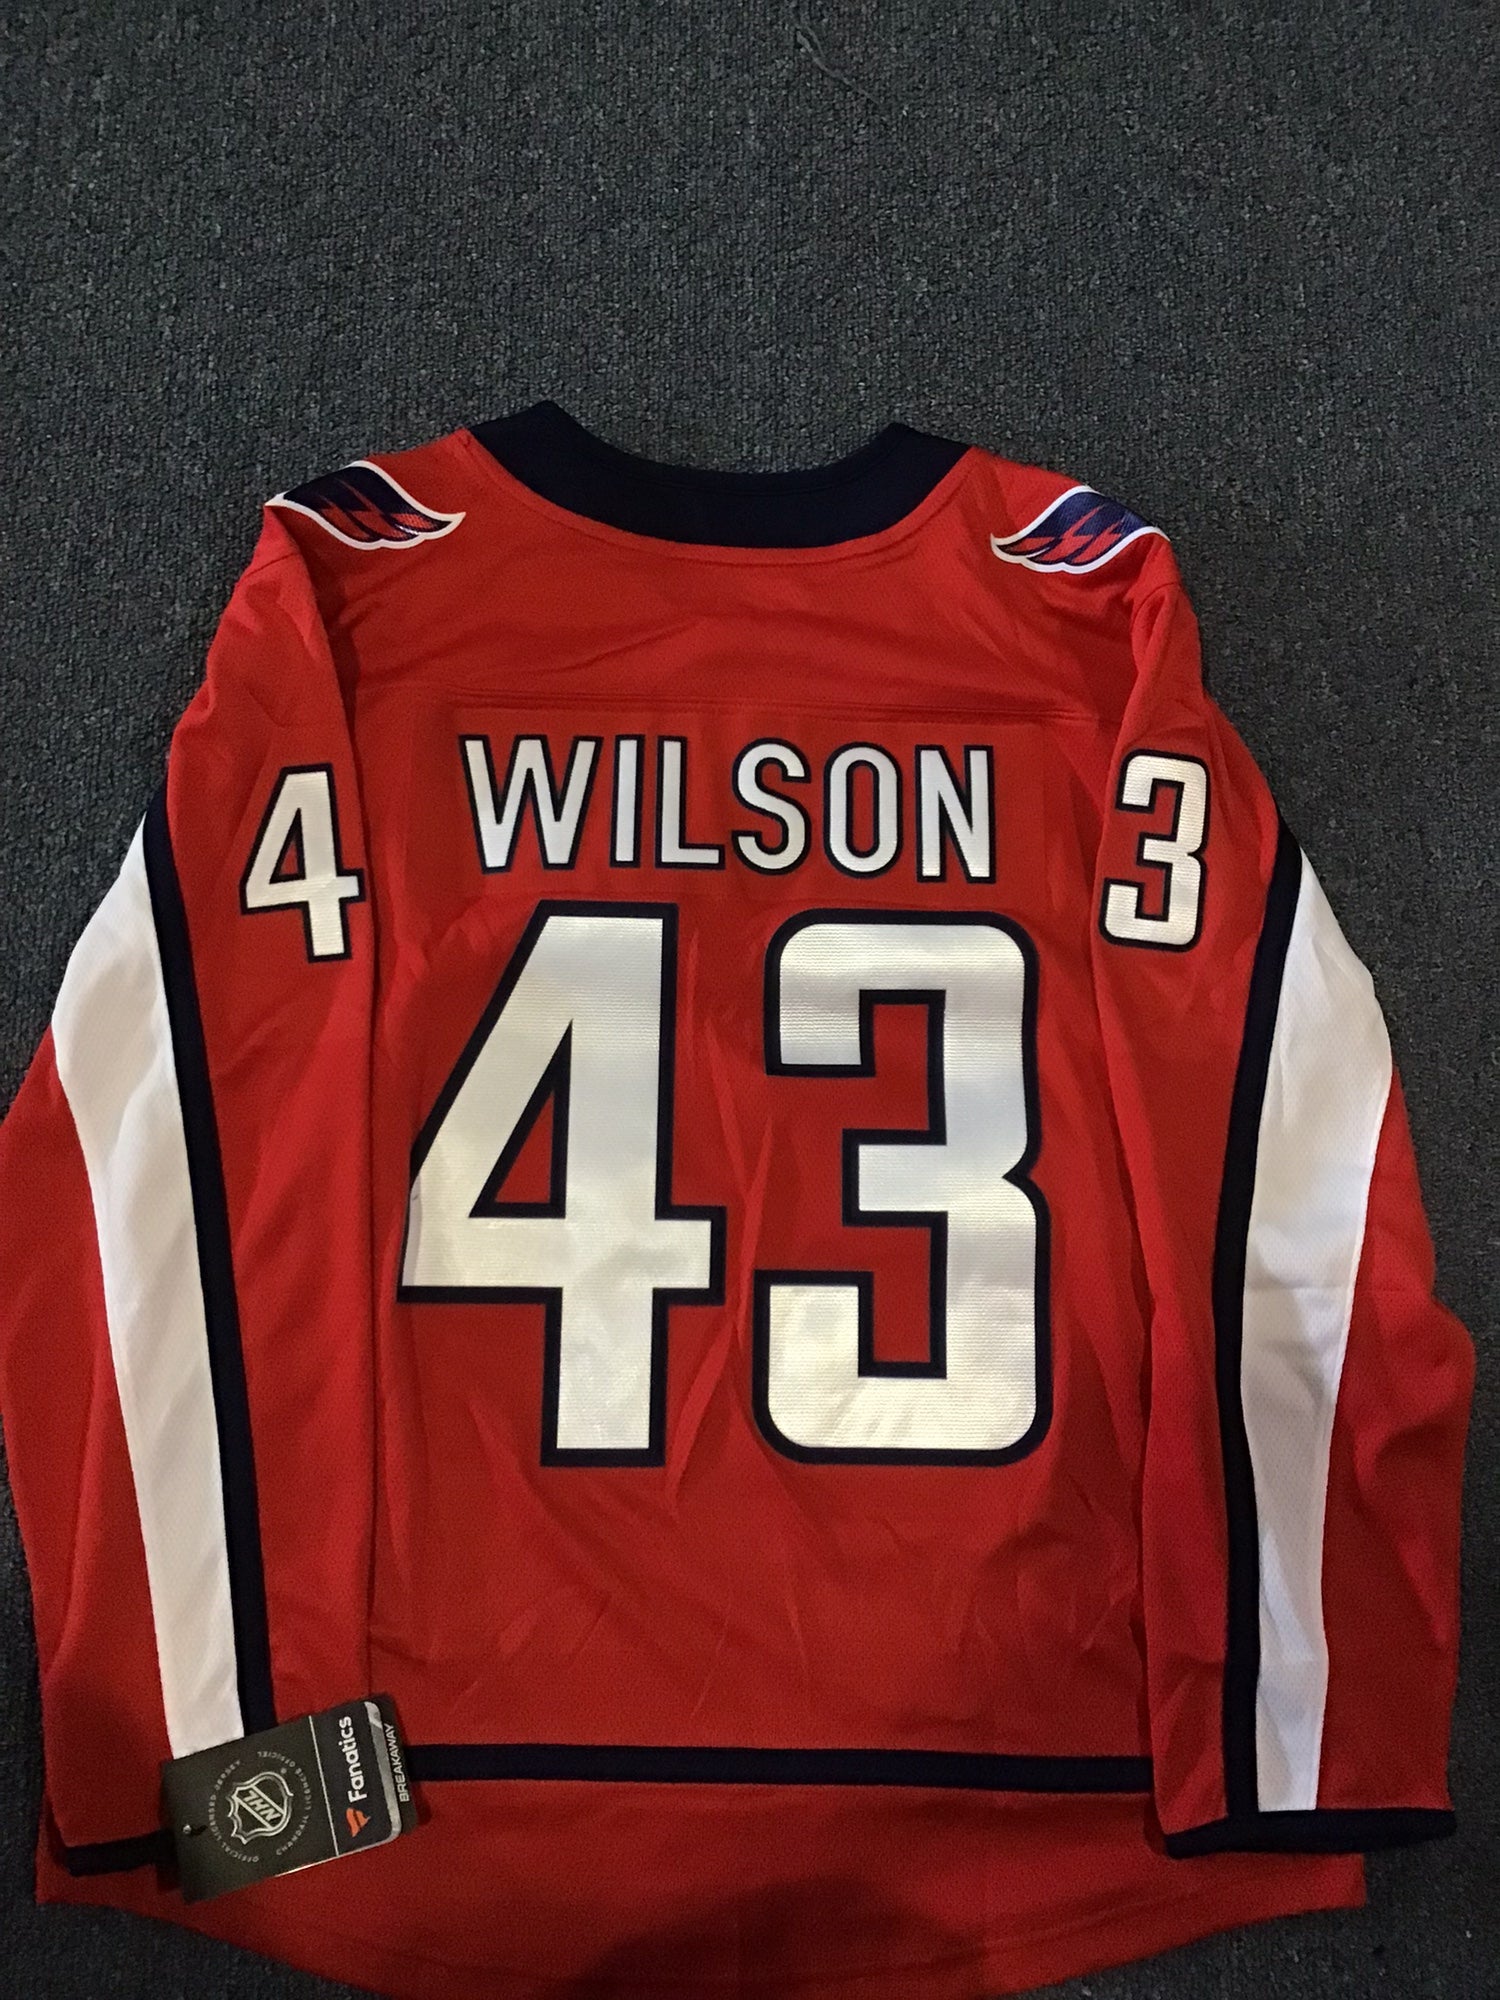 Washington Capitals: Tom Wilson comments on new retro jerseys